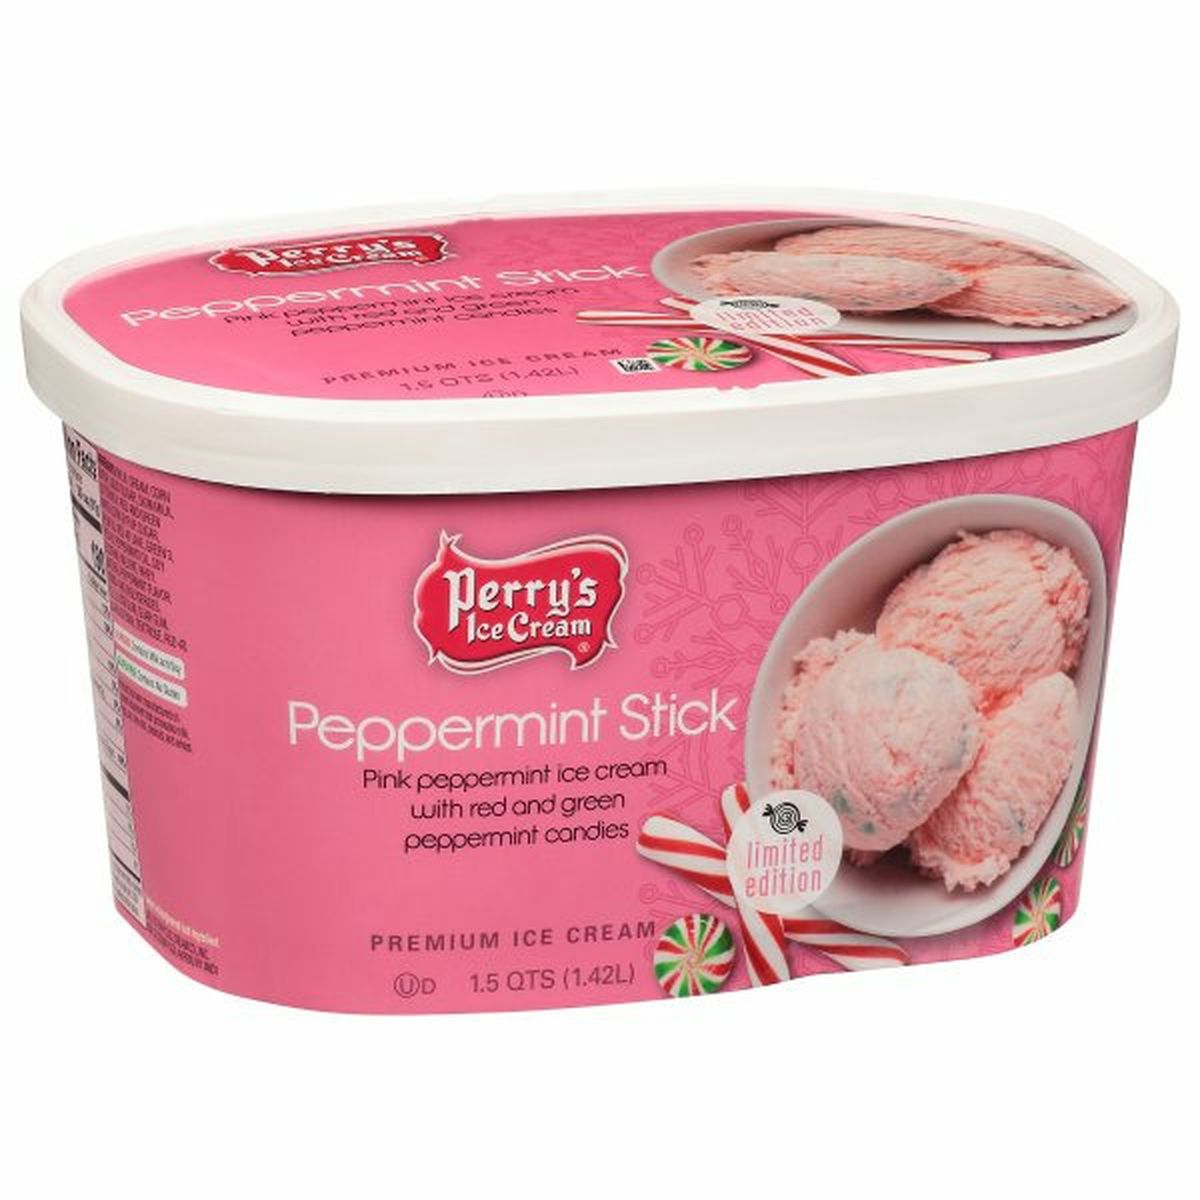 Calories in Perry's Ice Cream Premium, Peppermint Stick